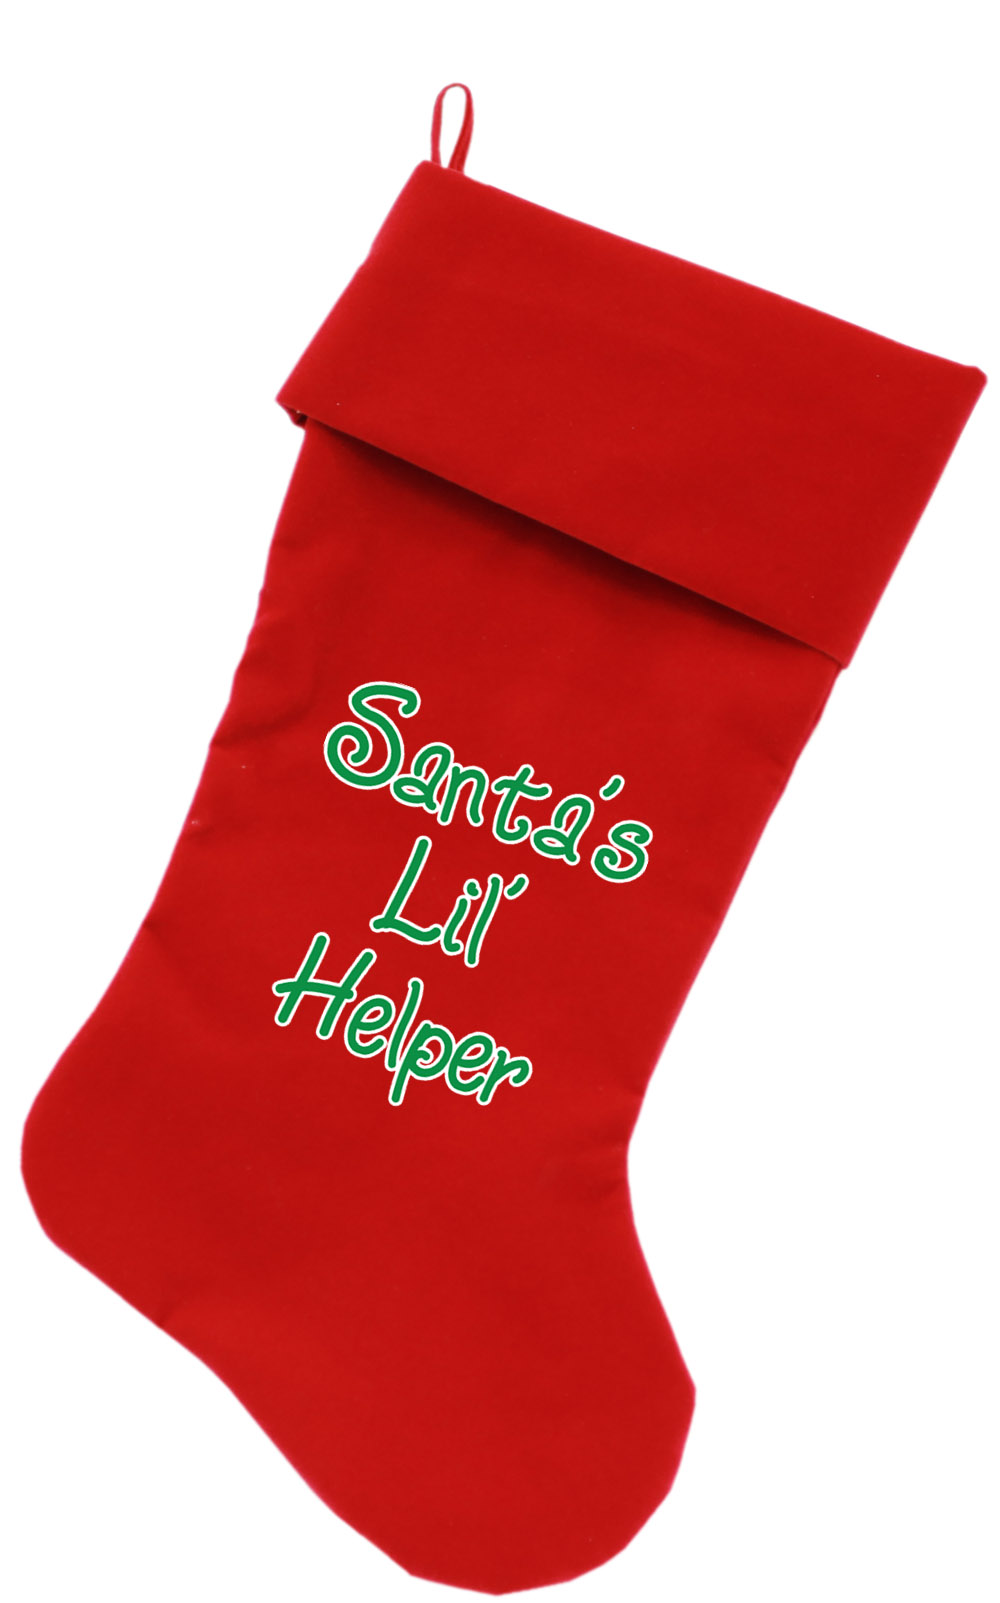 Santa's Lil' Helper Screen Print 18 inch Velvet Christmas Stocking Red